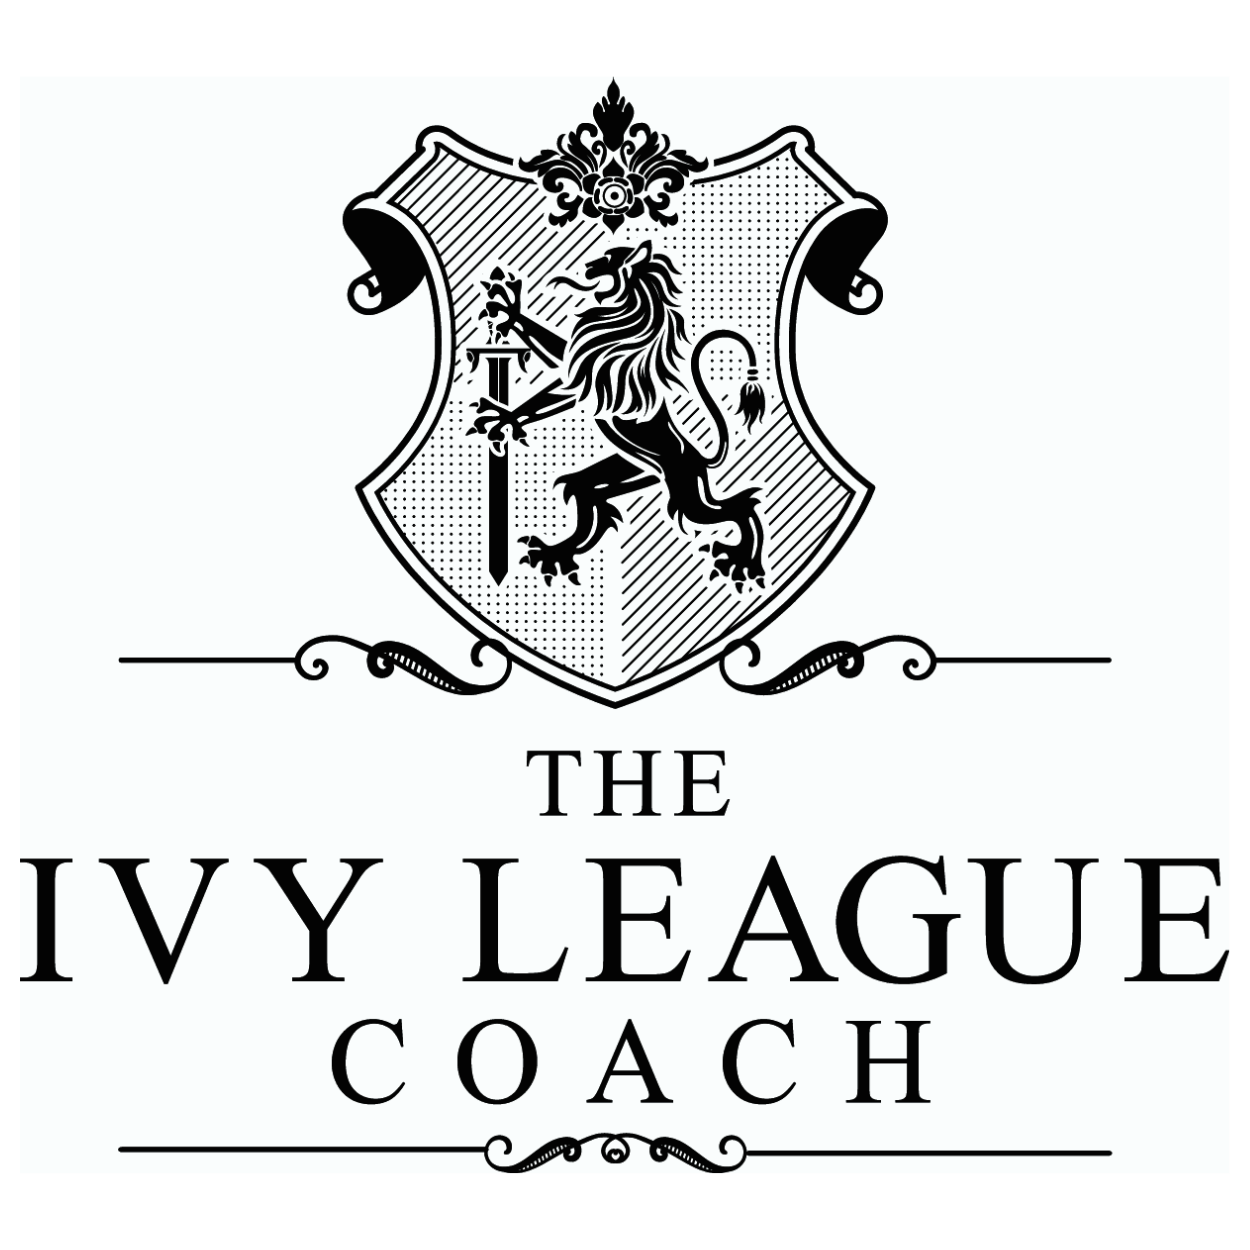 Ivy League Coach - Aronda Smith